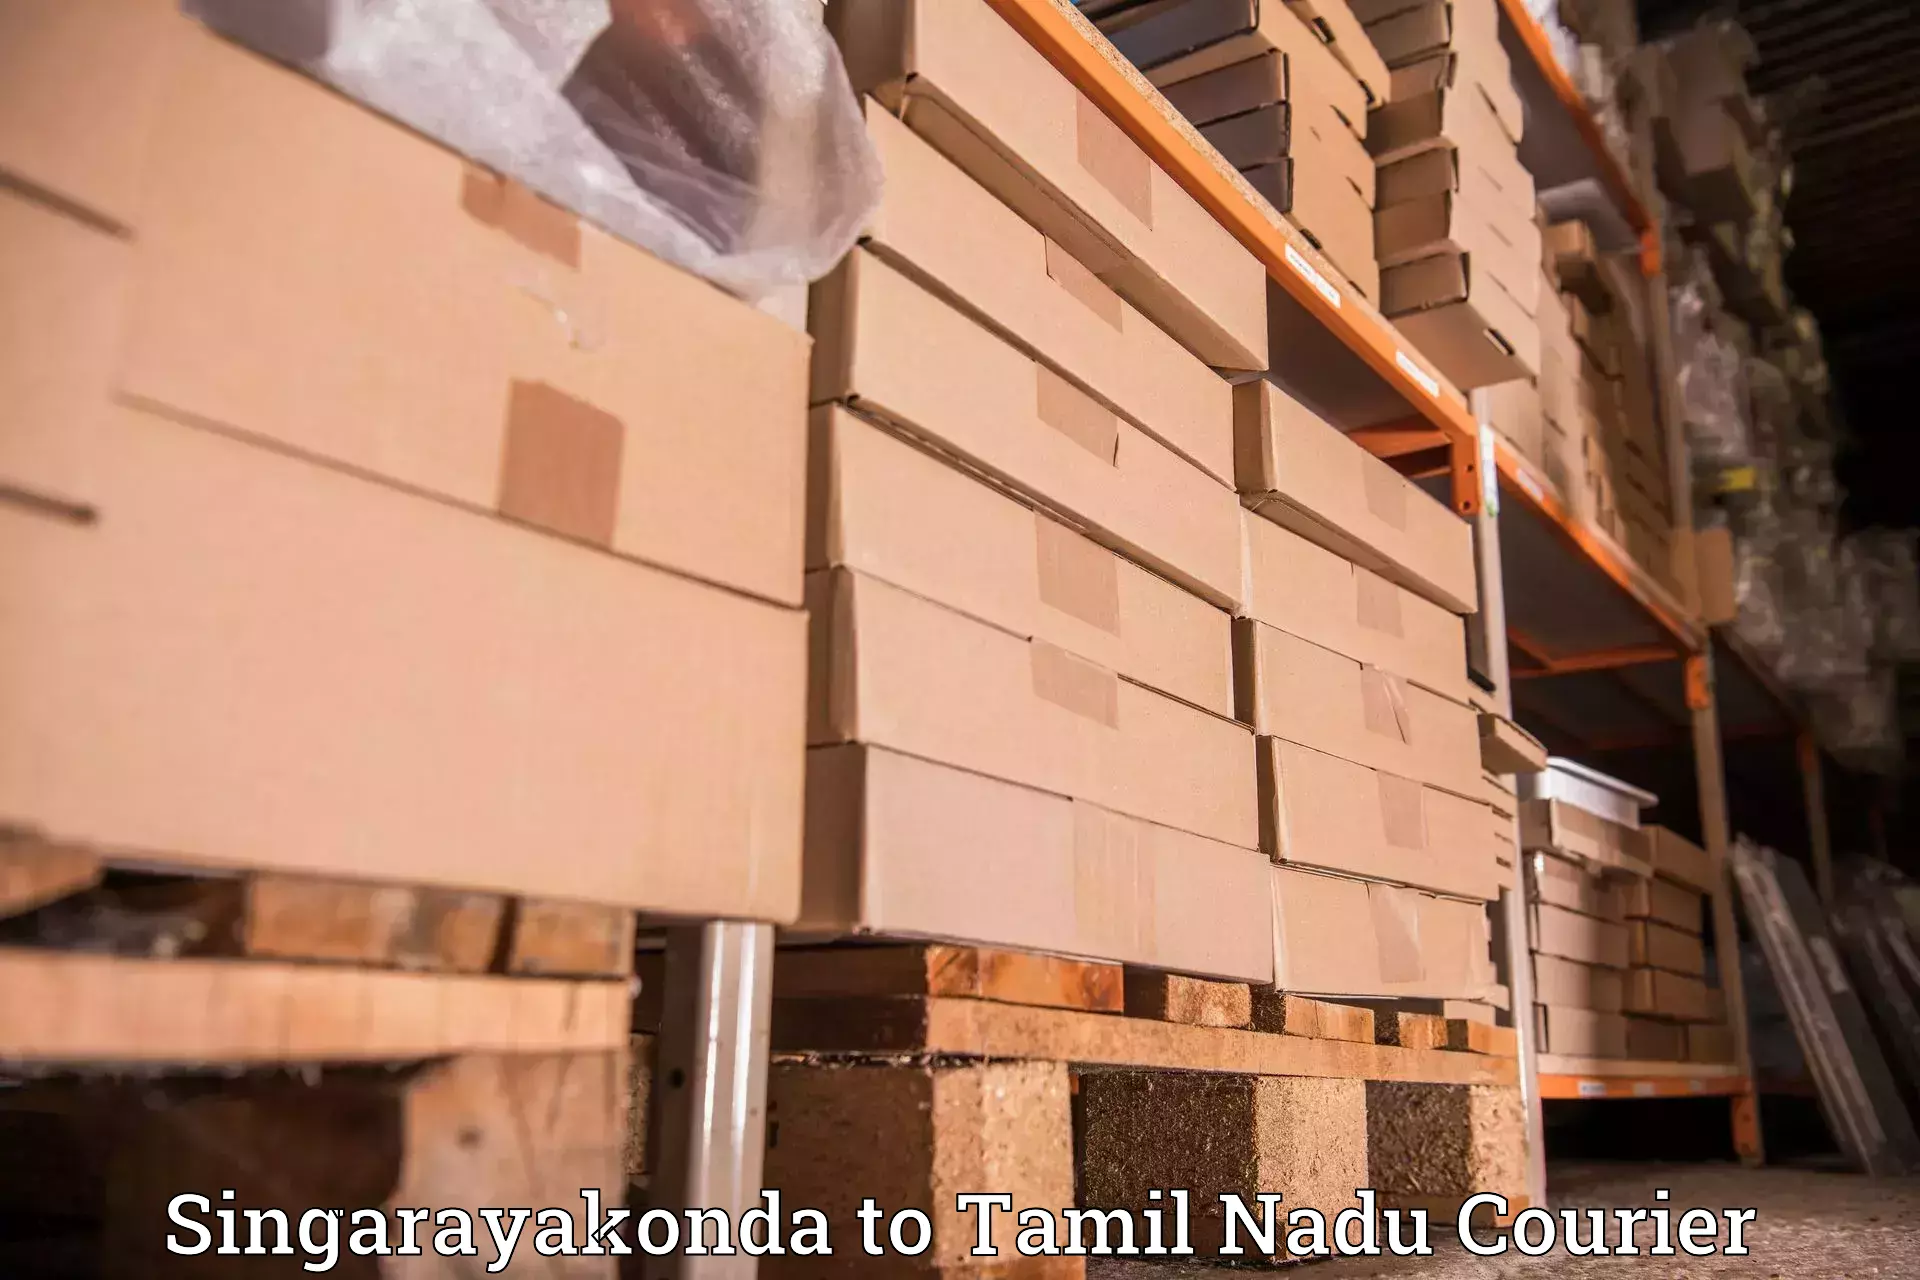 Premium courier solutions Singarayakonda to The Gandhigram Rural Institute